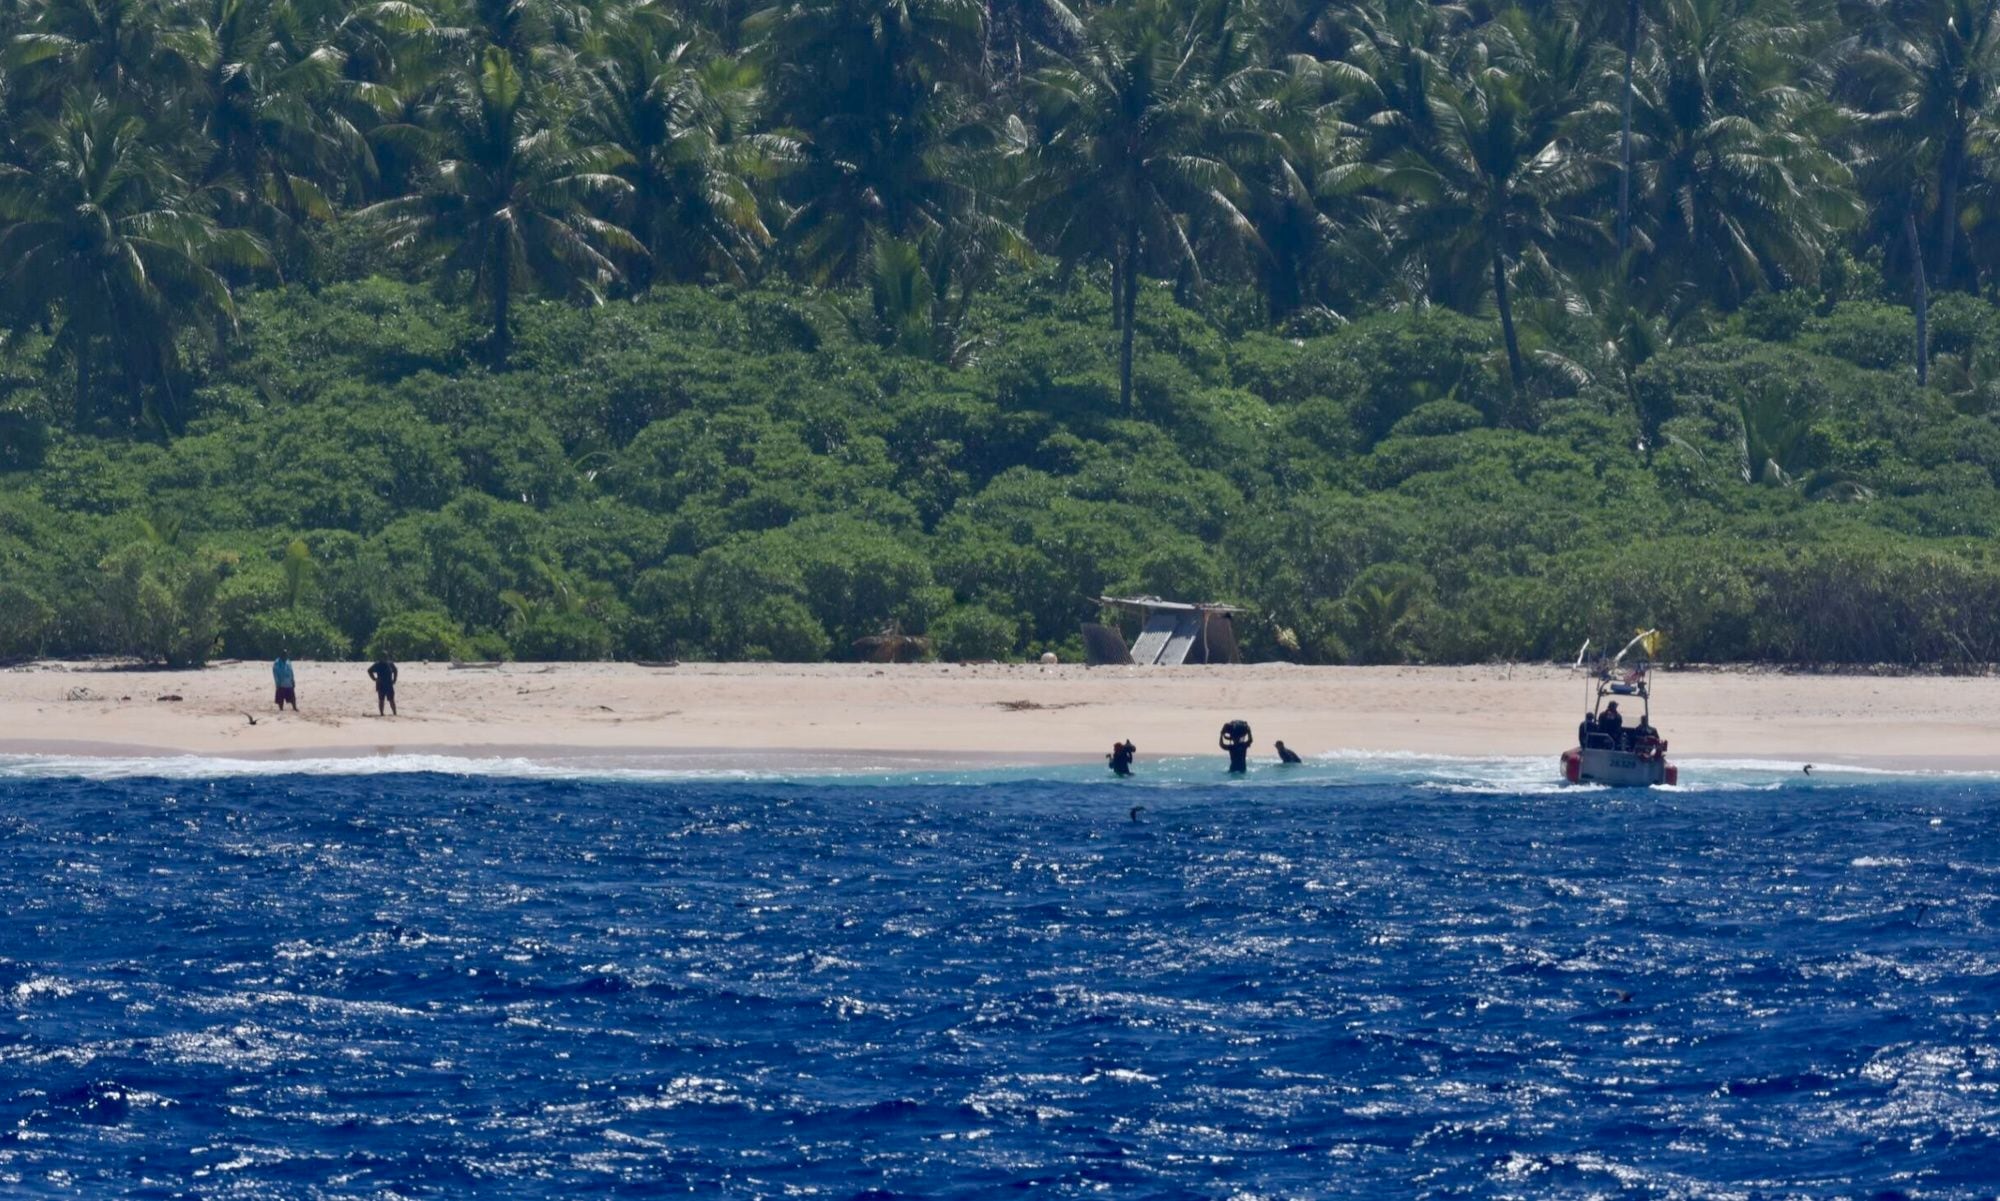 naufragio en el atolón: tres marinos rescatados en el pacífico tras pedir socorro con hojas de palmera